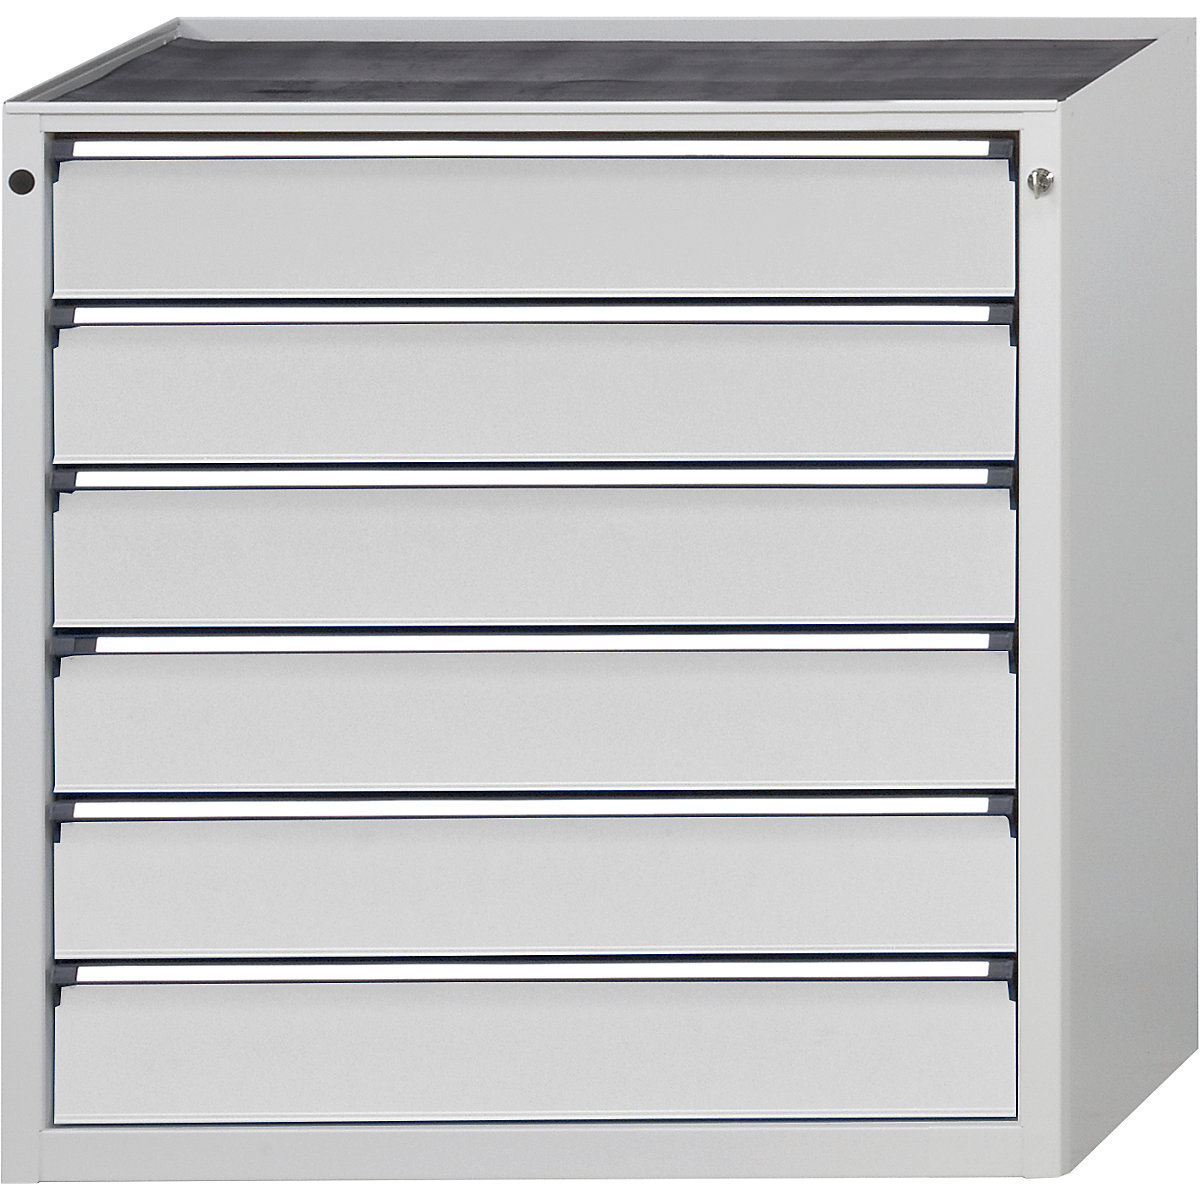 Armoire à tiroirs – ANKE, l x p 910 x 675 mm, 6 tiroirs, hauteur 980 mm, façade gris clair-6